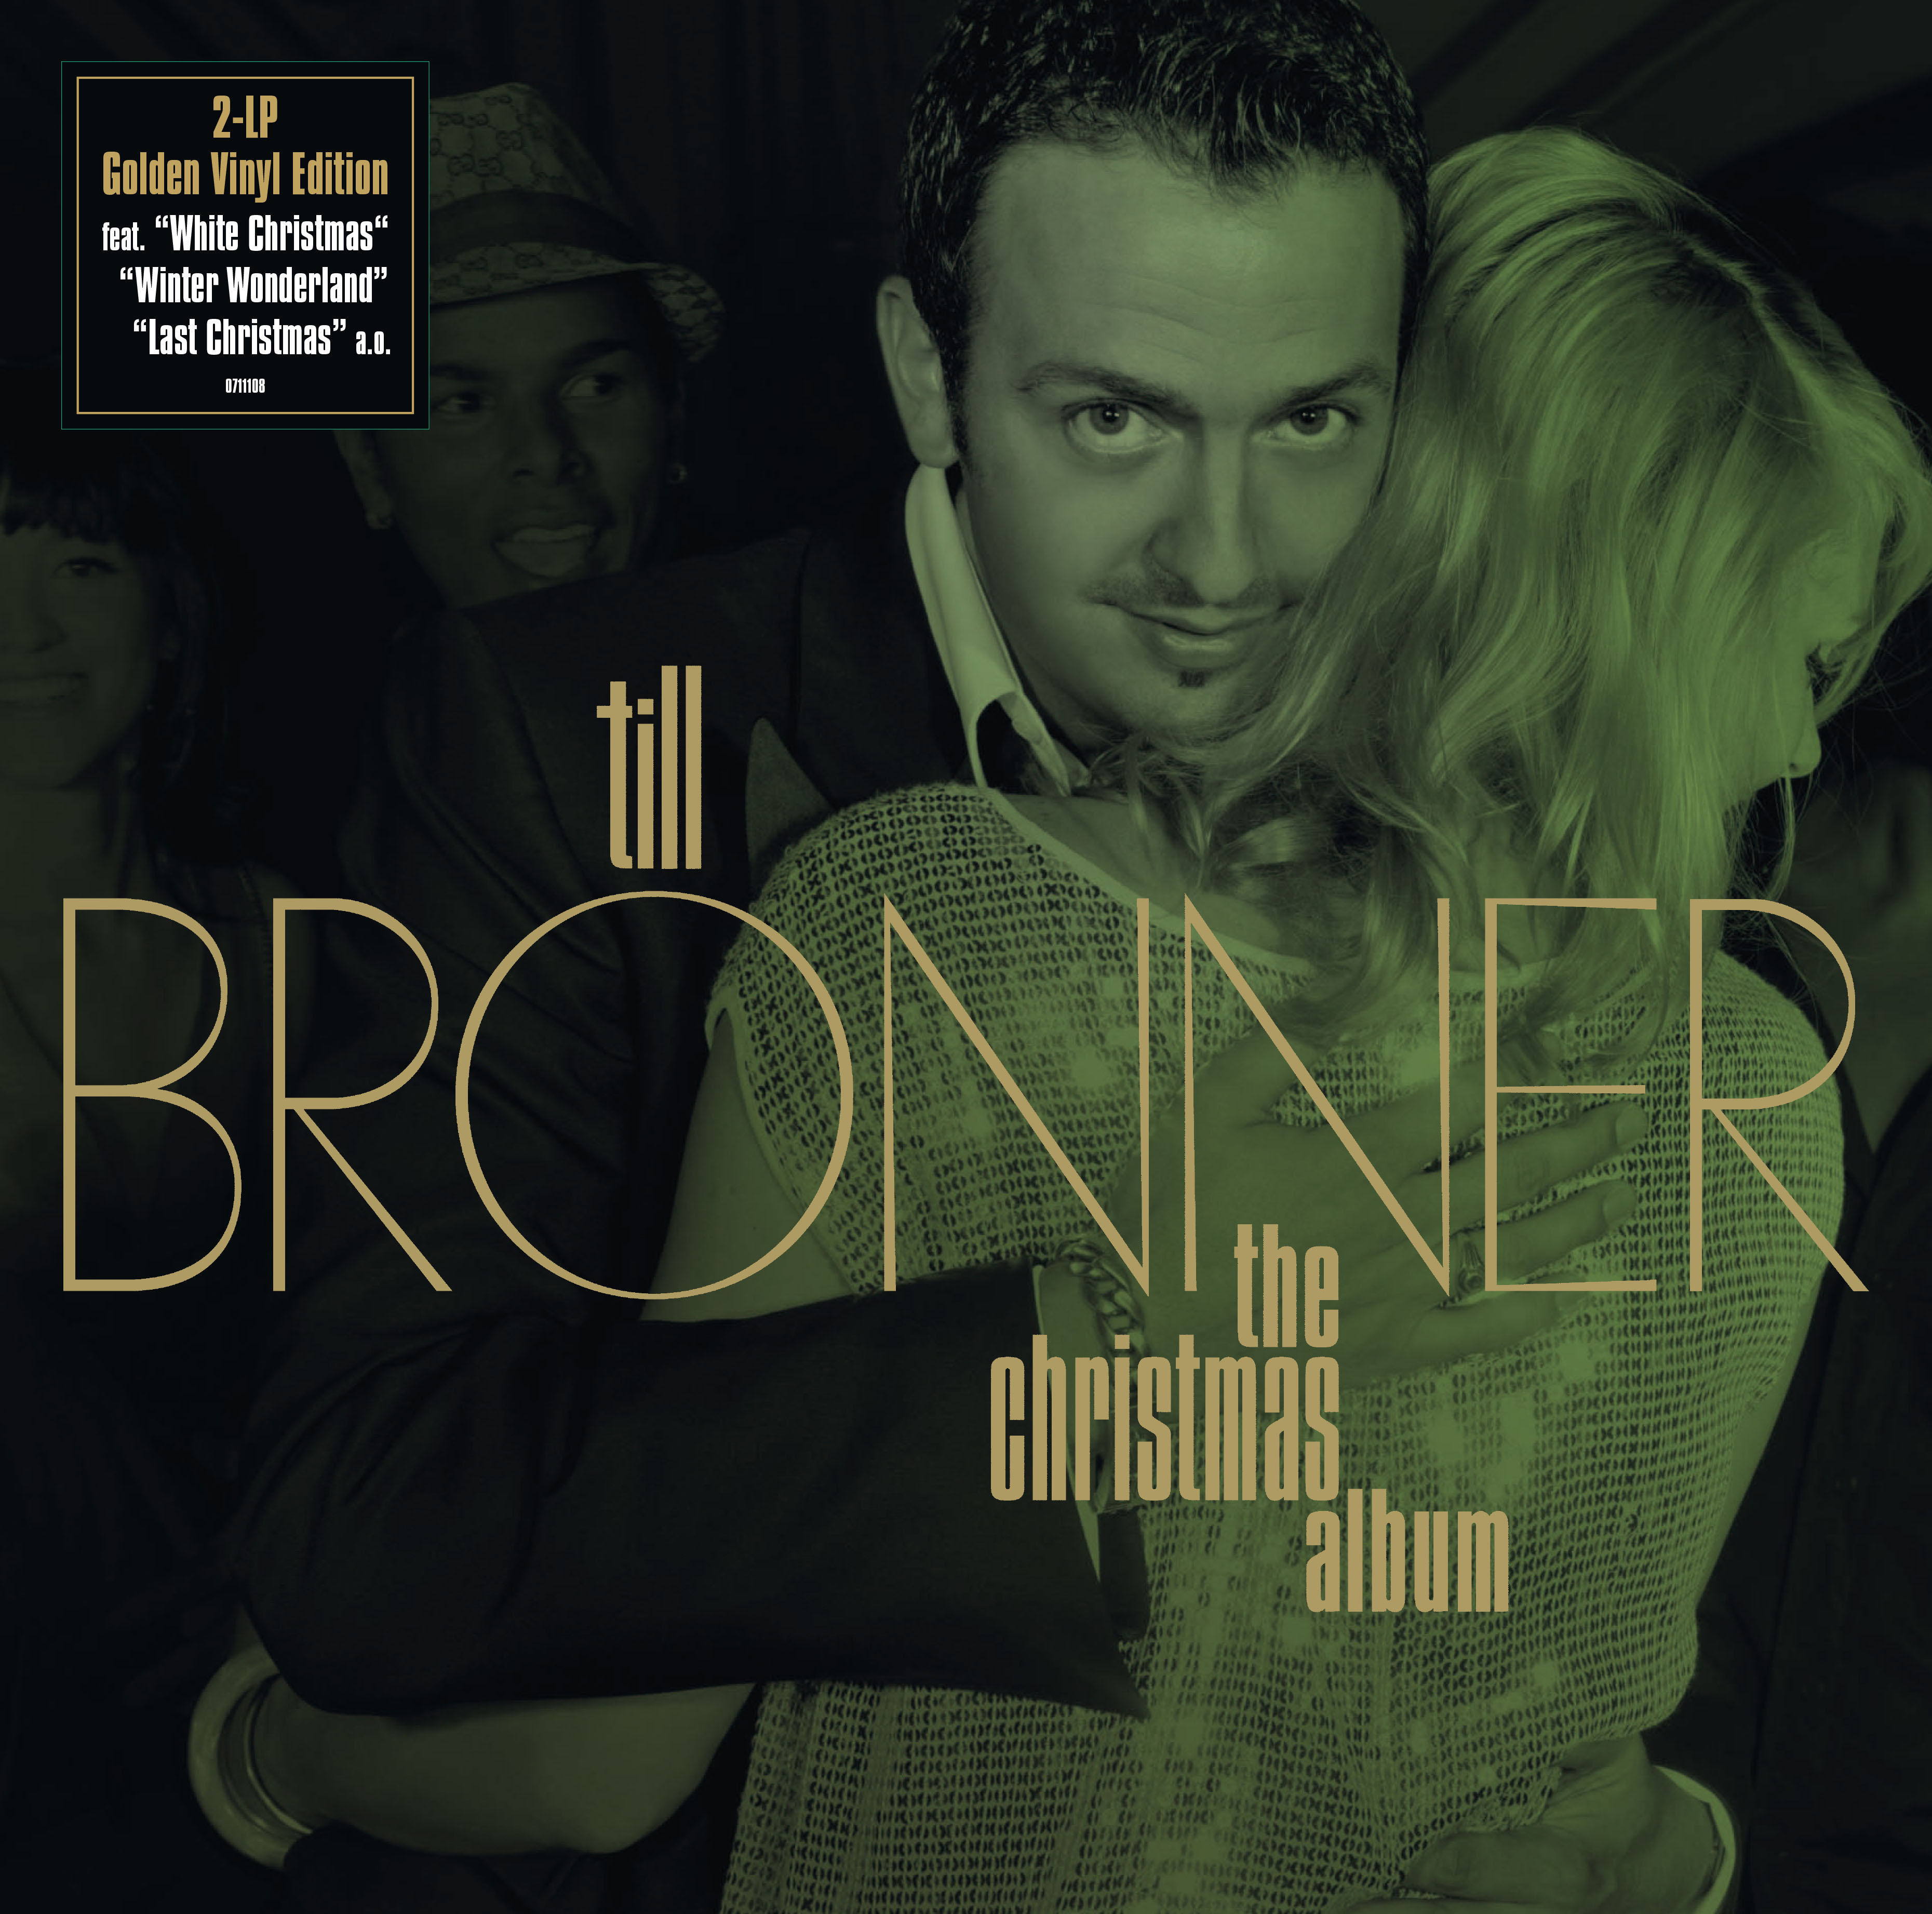 Till Brönner - - Christmas (Vinyl) Album The Edition) (Ltd.Gold